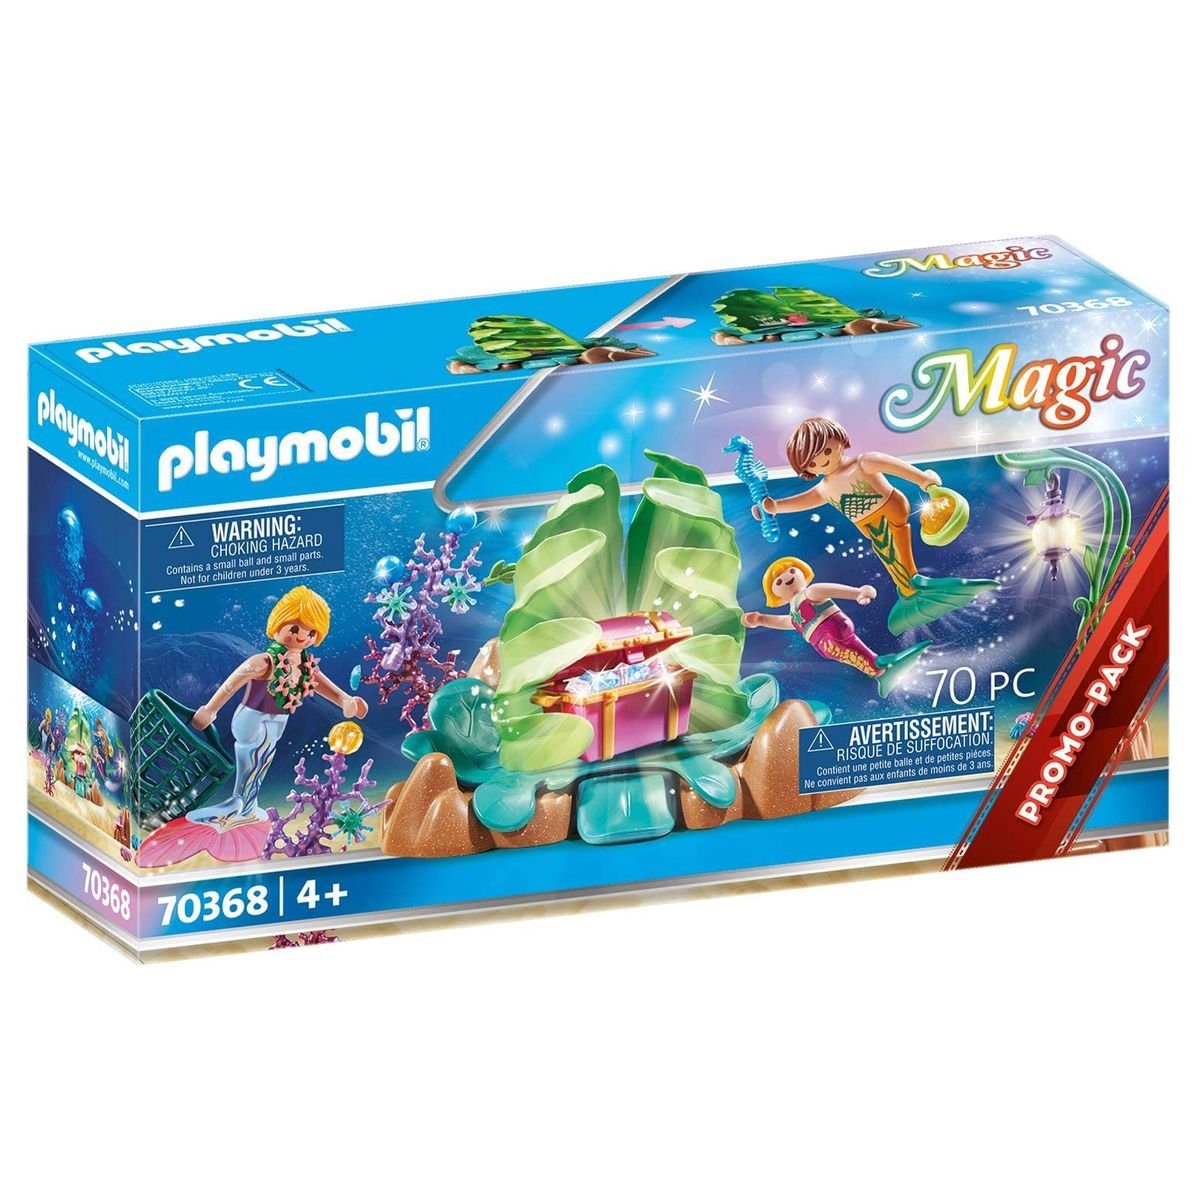 Playmobil® Spielwelt PLAYMOBIL® 70368 - Magic - Spielset, Korallen-Lounge  der Meerjungfrau, Magischer Unterwasser-Spaß